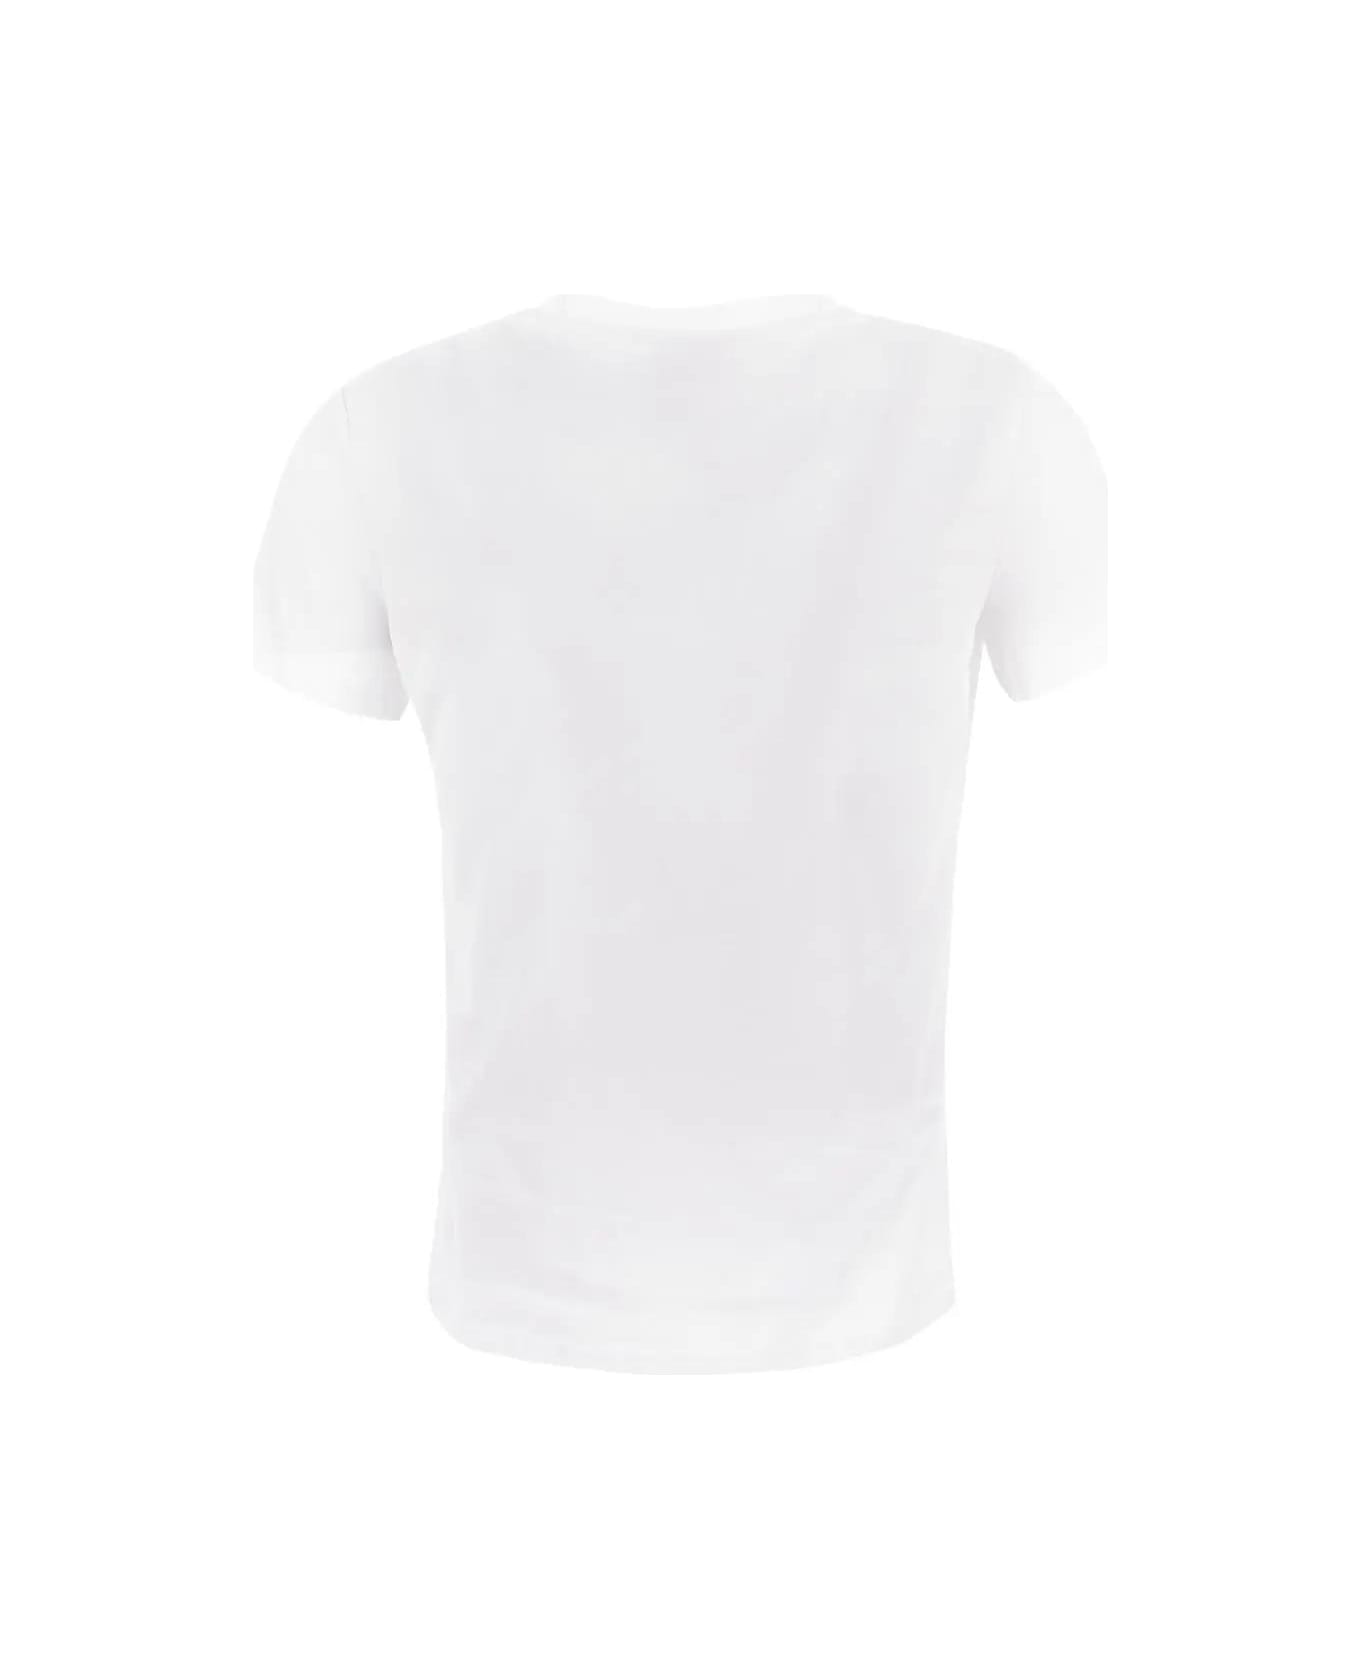 Elisabetta Franchi Chain T-shirt - White